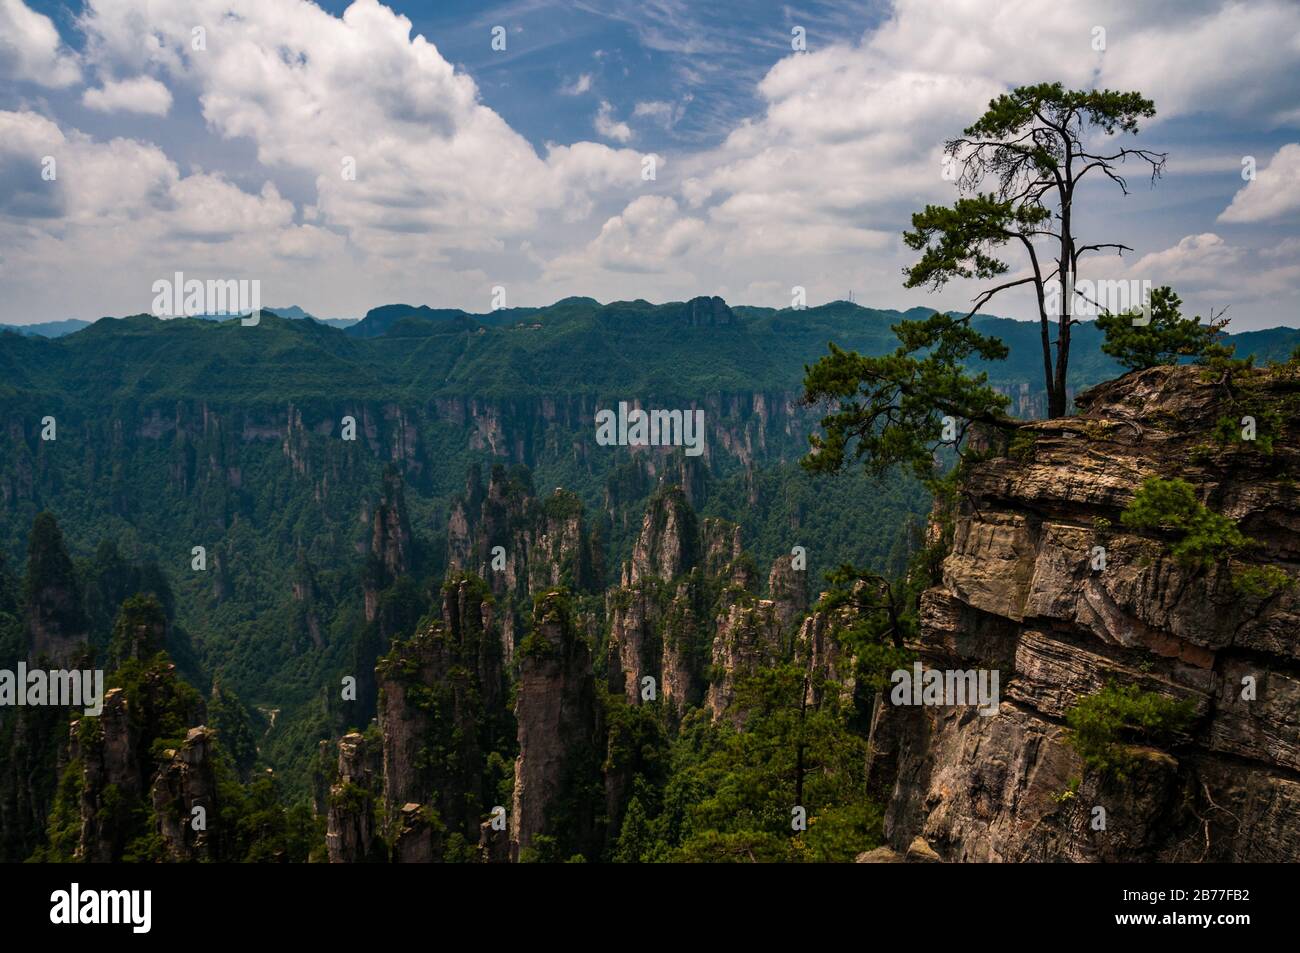 Chinas Incredible Stone Pillars Inspired Avatar Scenery